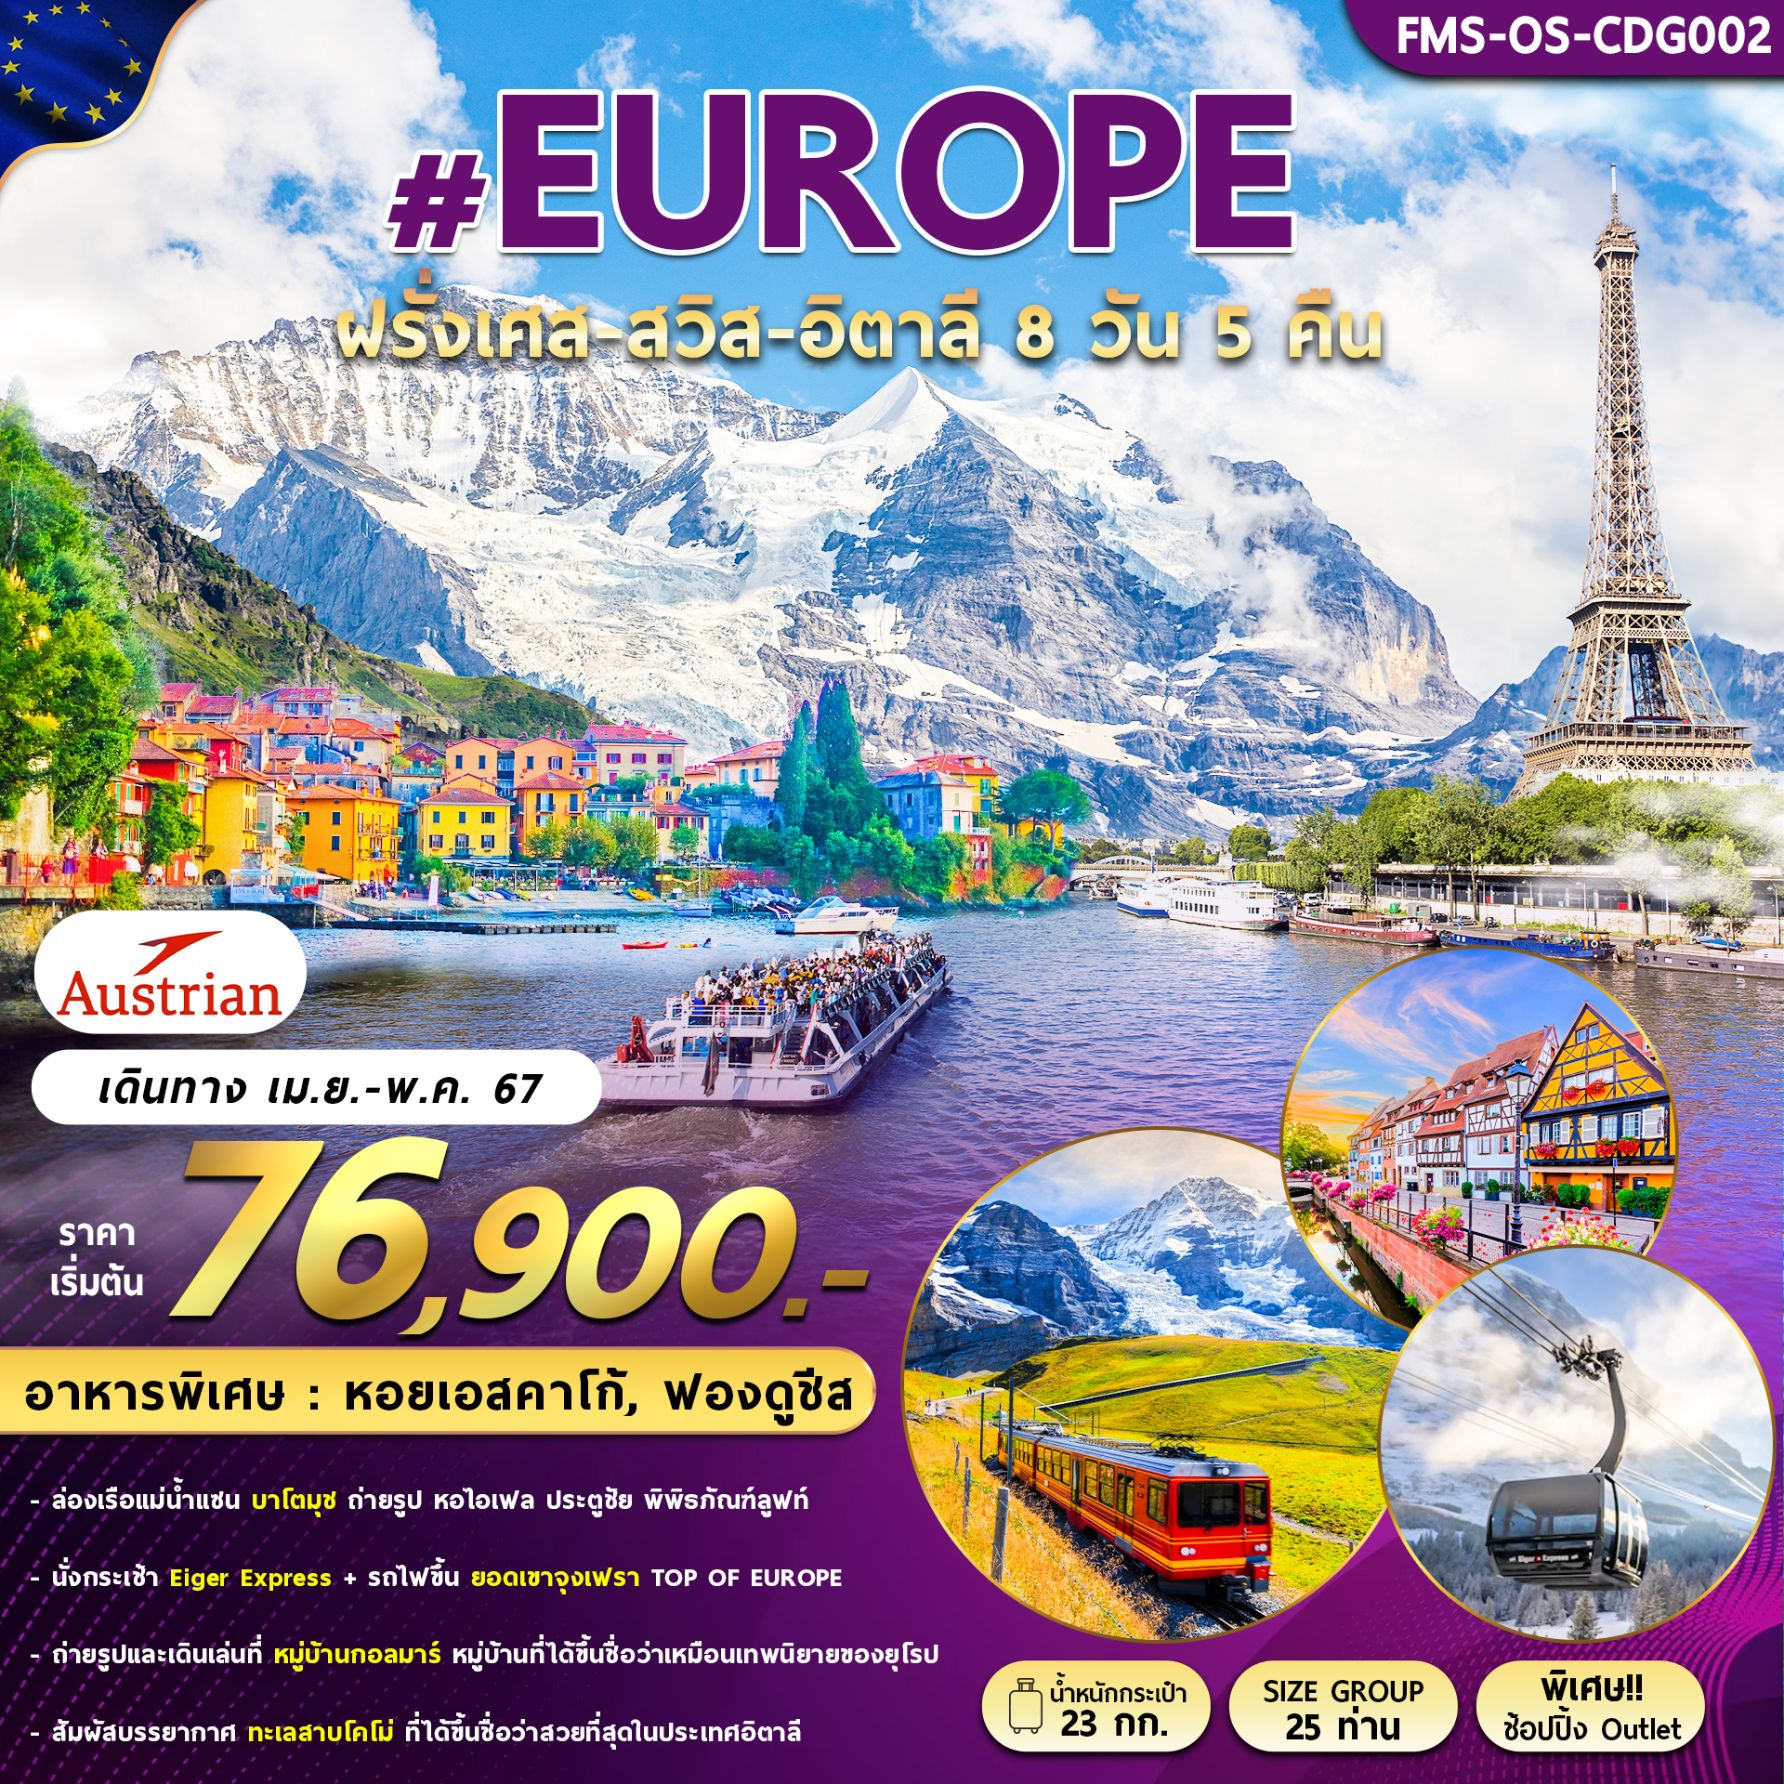 #EUROPE ฝรั่งเศส สวิส อิตาลี 8 วัน 5 คืน เดินทาง เมษายน - พฤษภาคม 67 เริ่มต้น 76,900.- Austrian Airlines (OS)